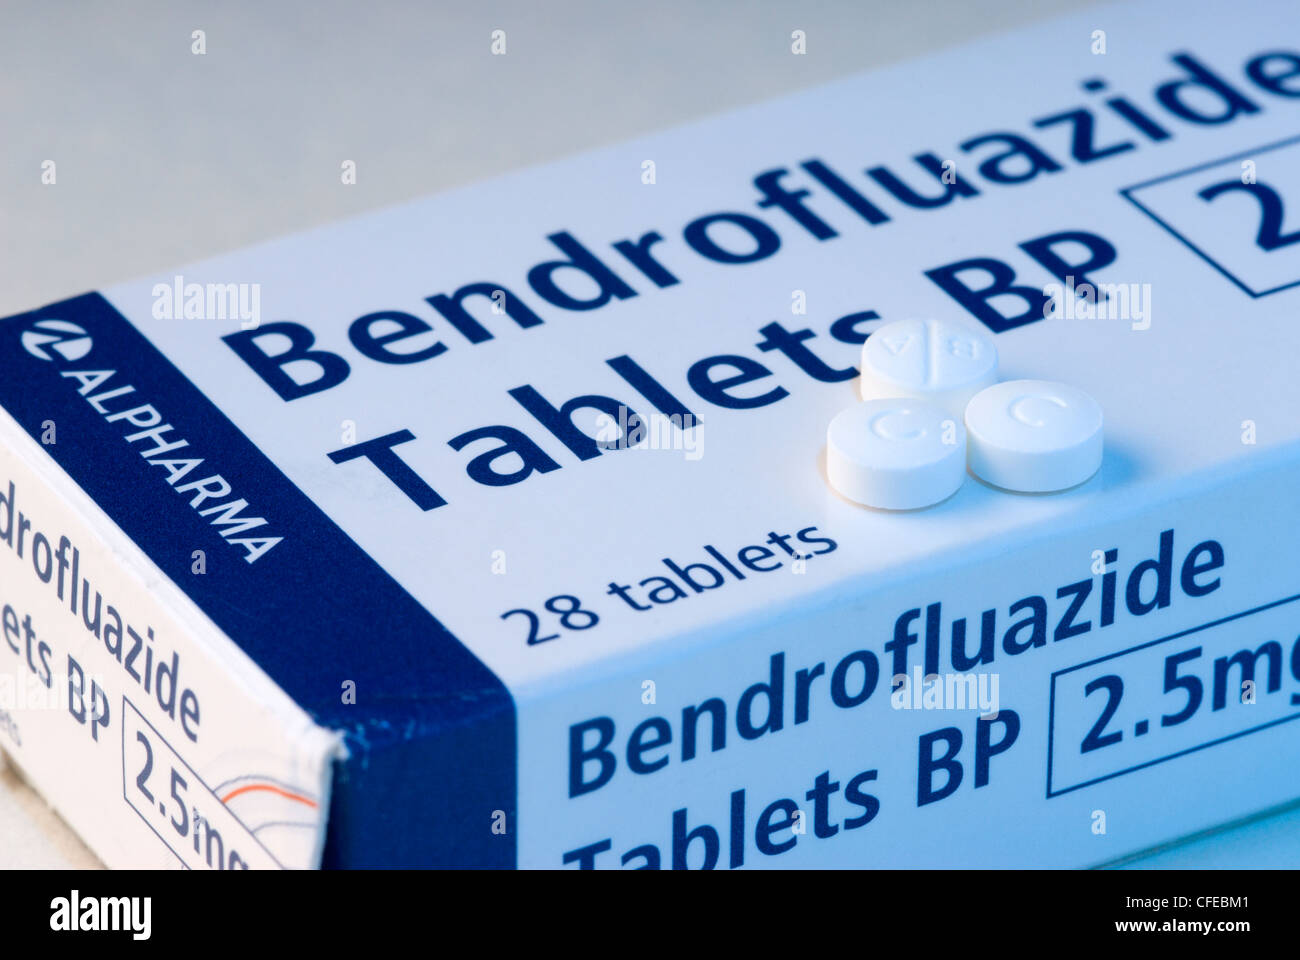 Un'immagine generica di compresse Bendrofluazide prescritto per trattare la ritenzione fluida, ridurre la pressione sanguigna alta o sopprimere la lattazione. Foto Stock